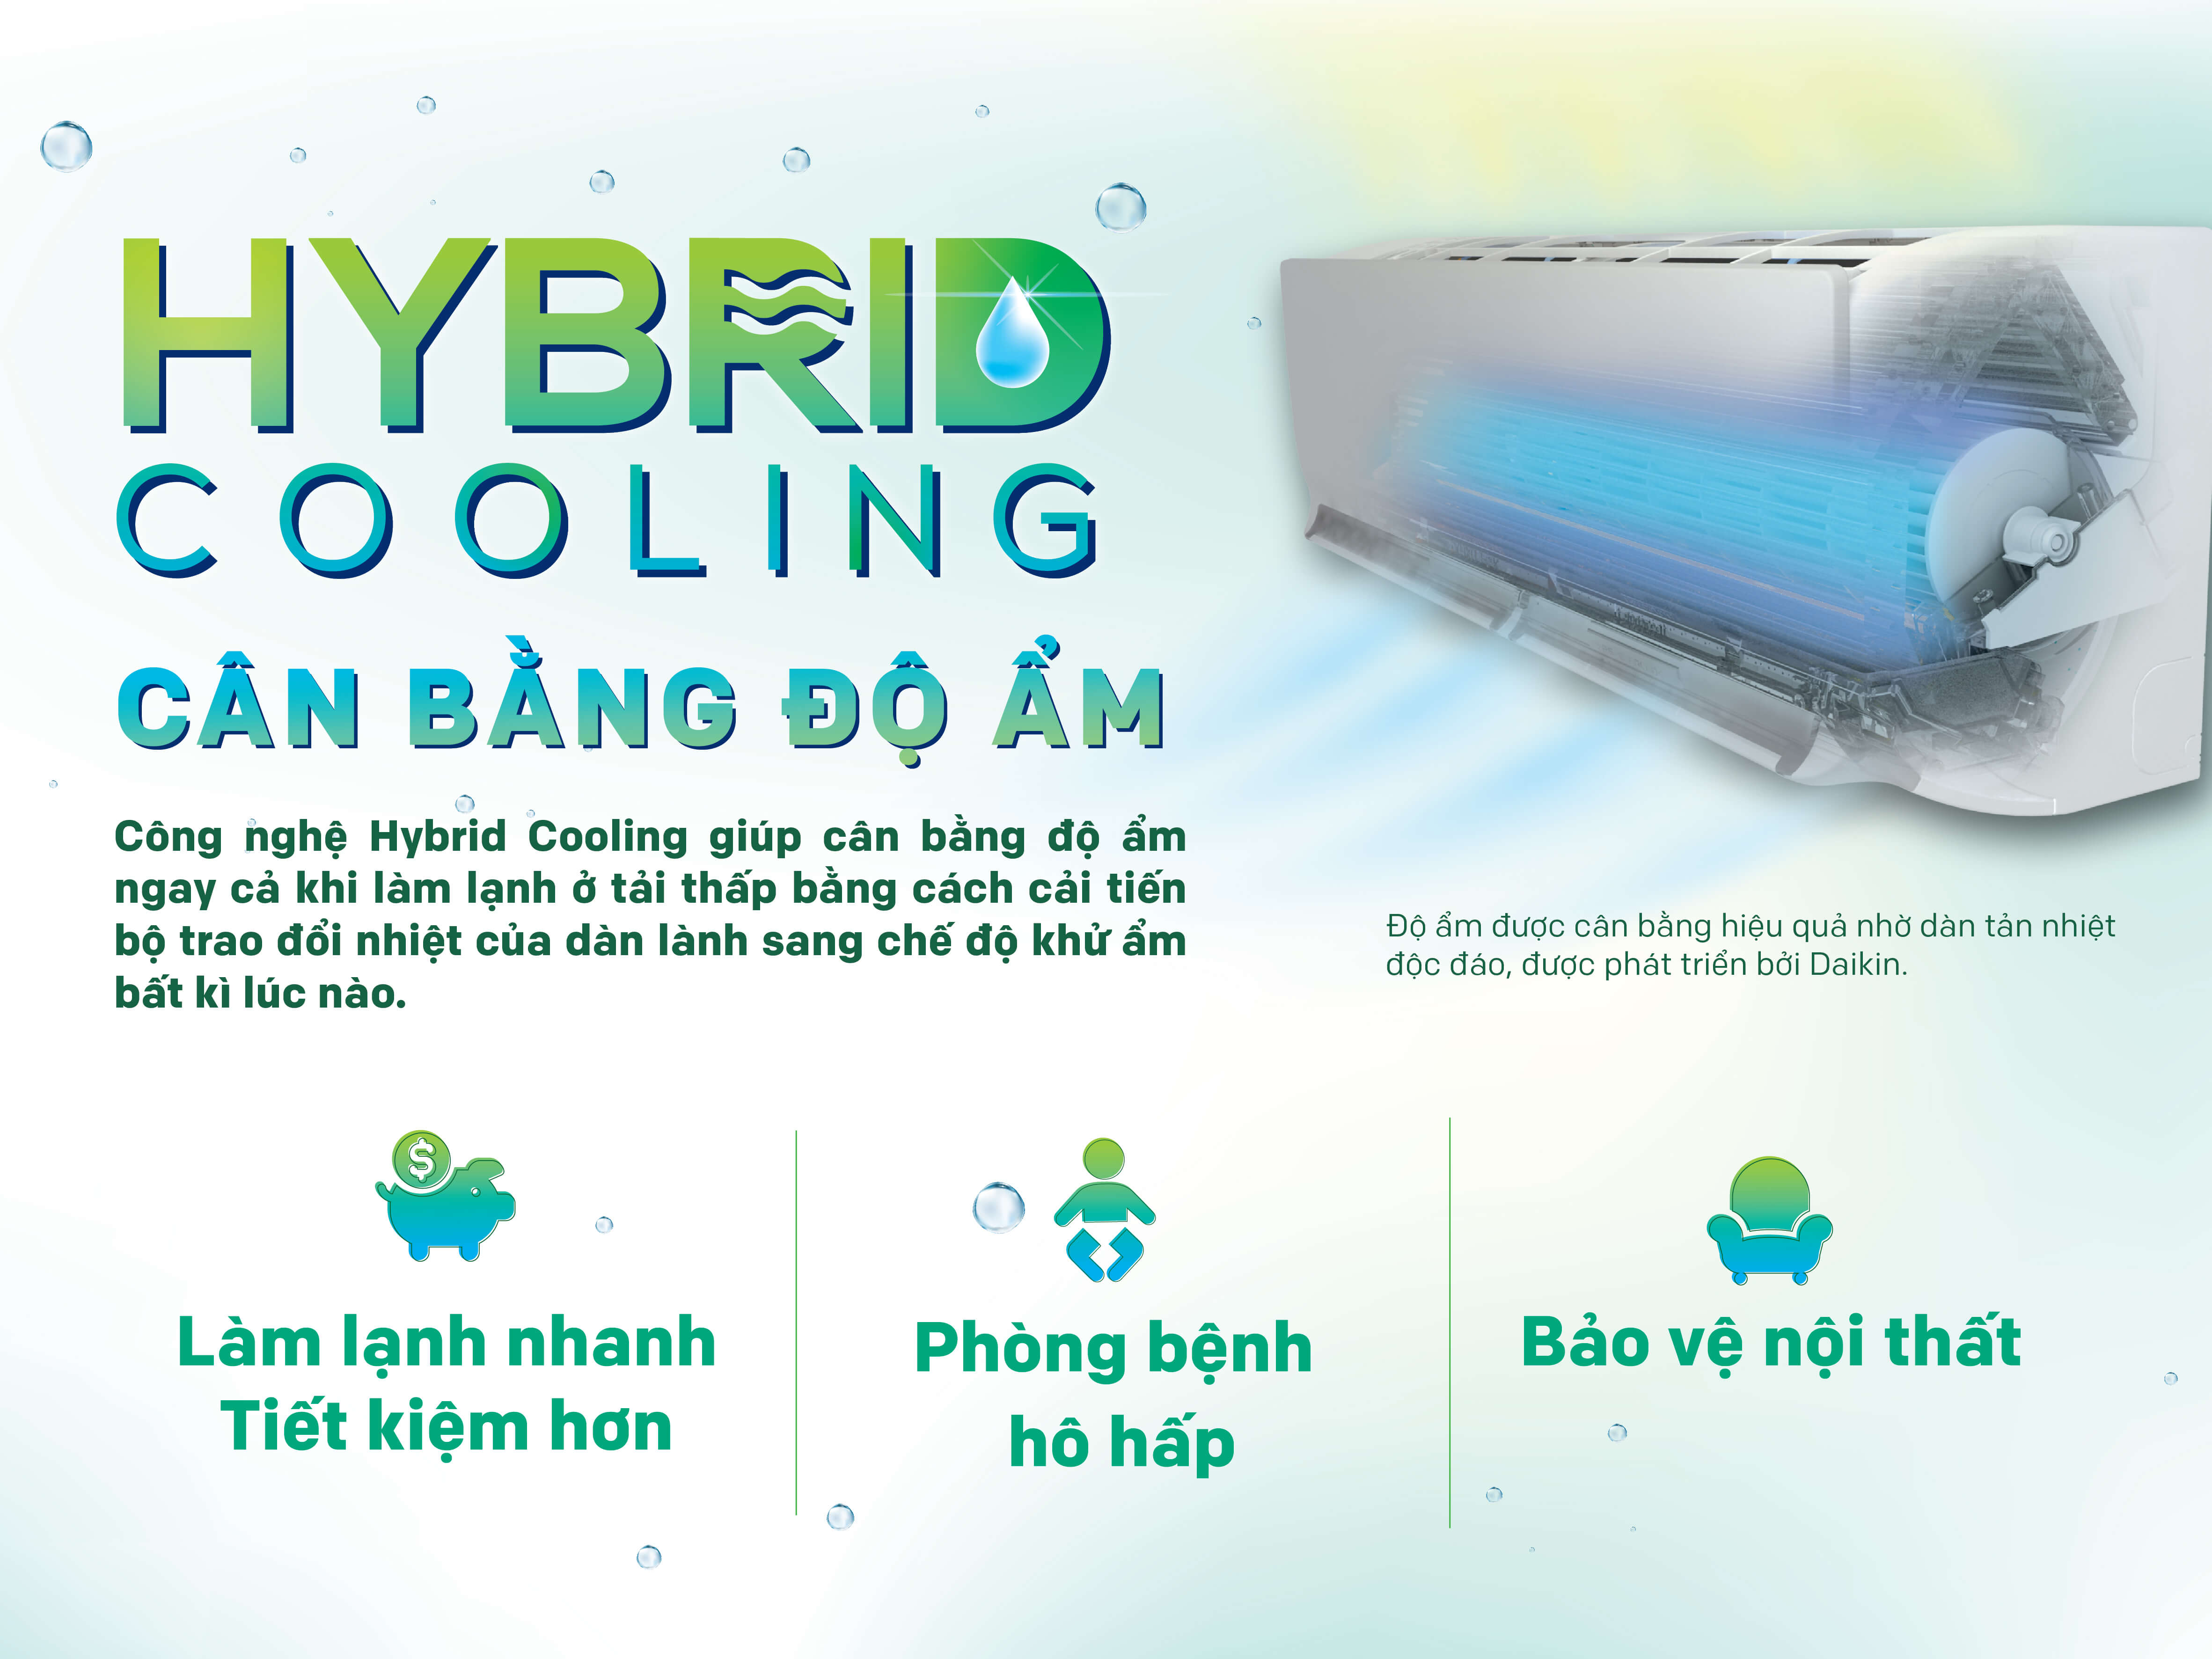 Chuẩn cân bằng ẩm - Hybrid Cooling